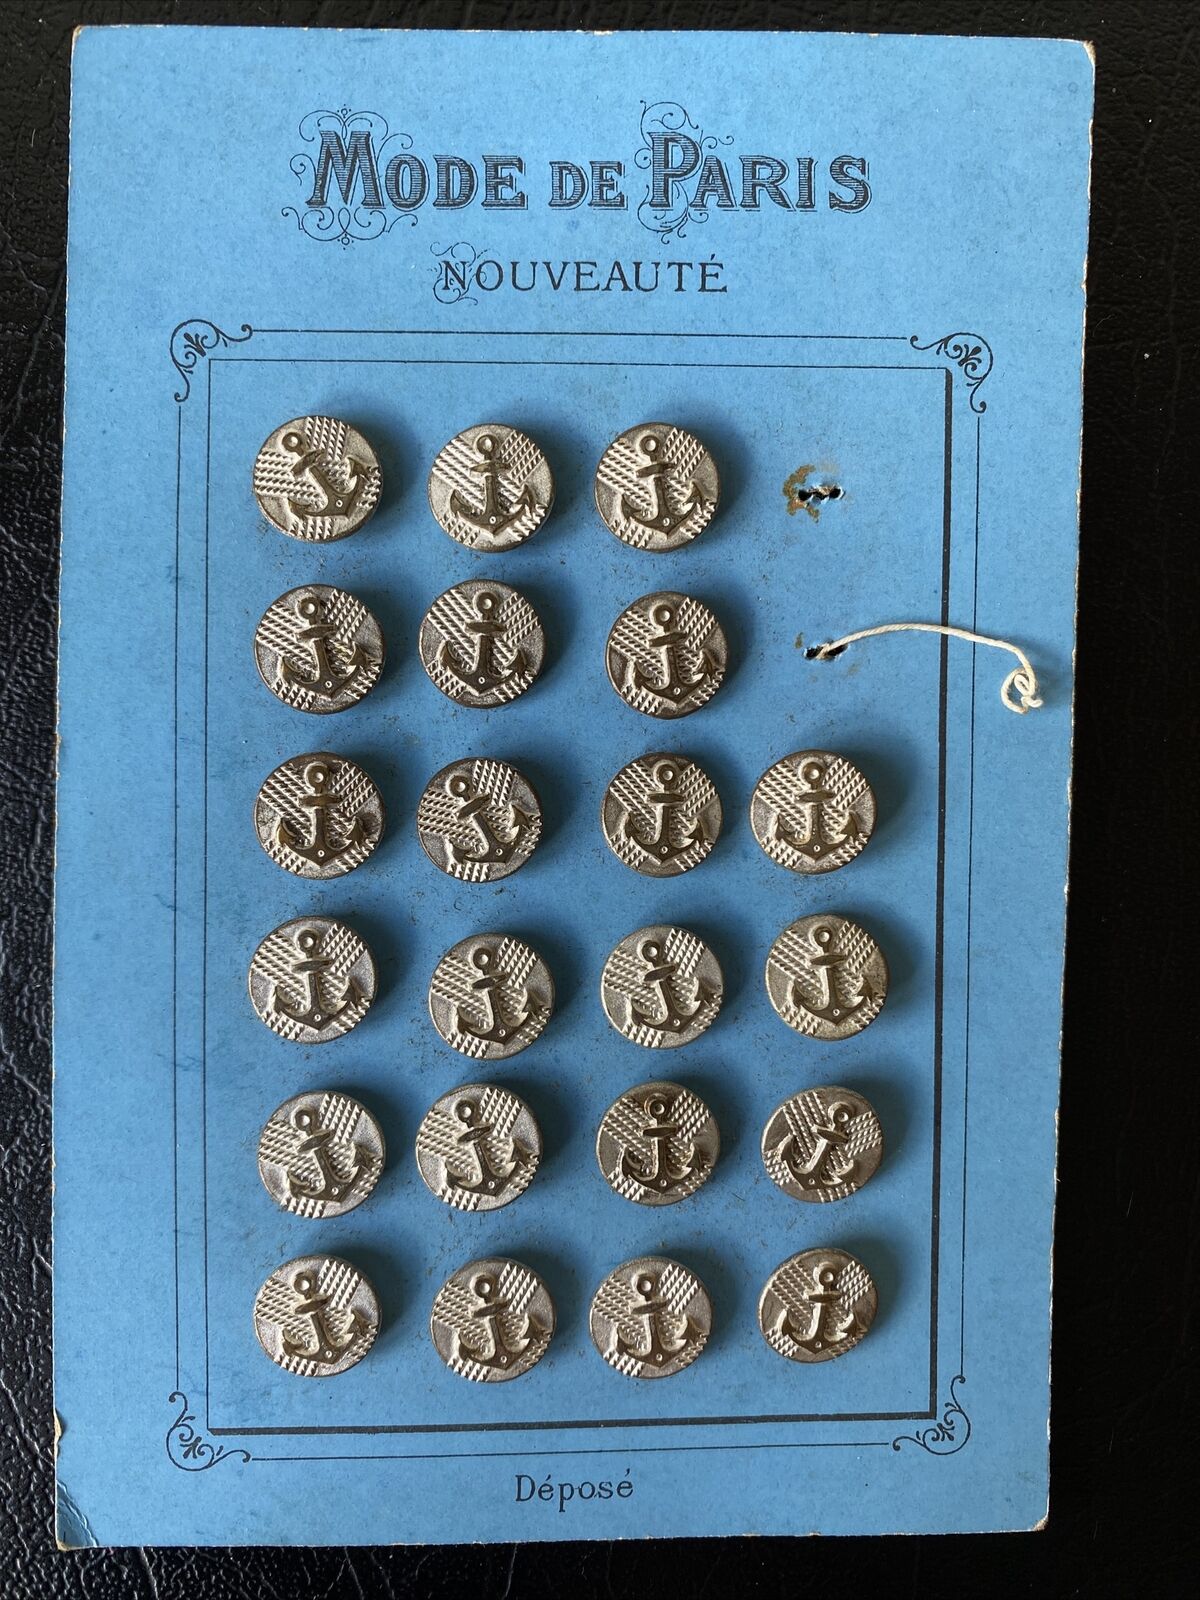 Antique French Vintage Button Set, Anchors,Mode de Paris Nouveaute,Original Card